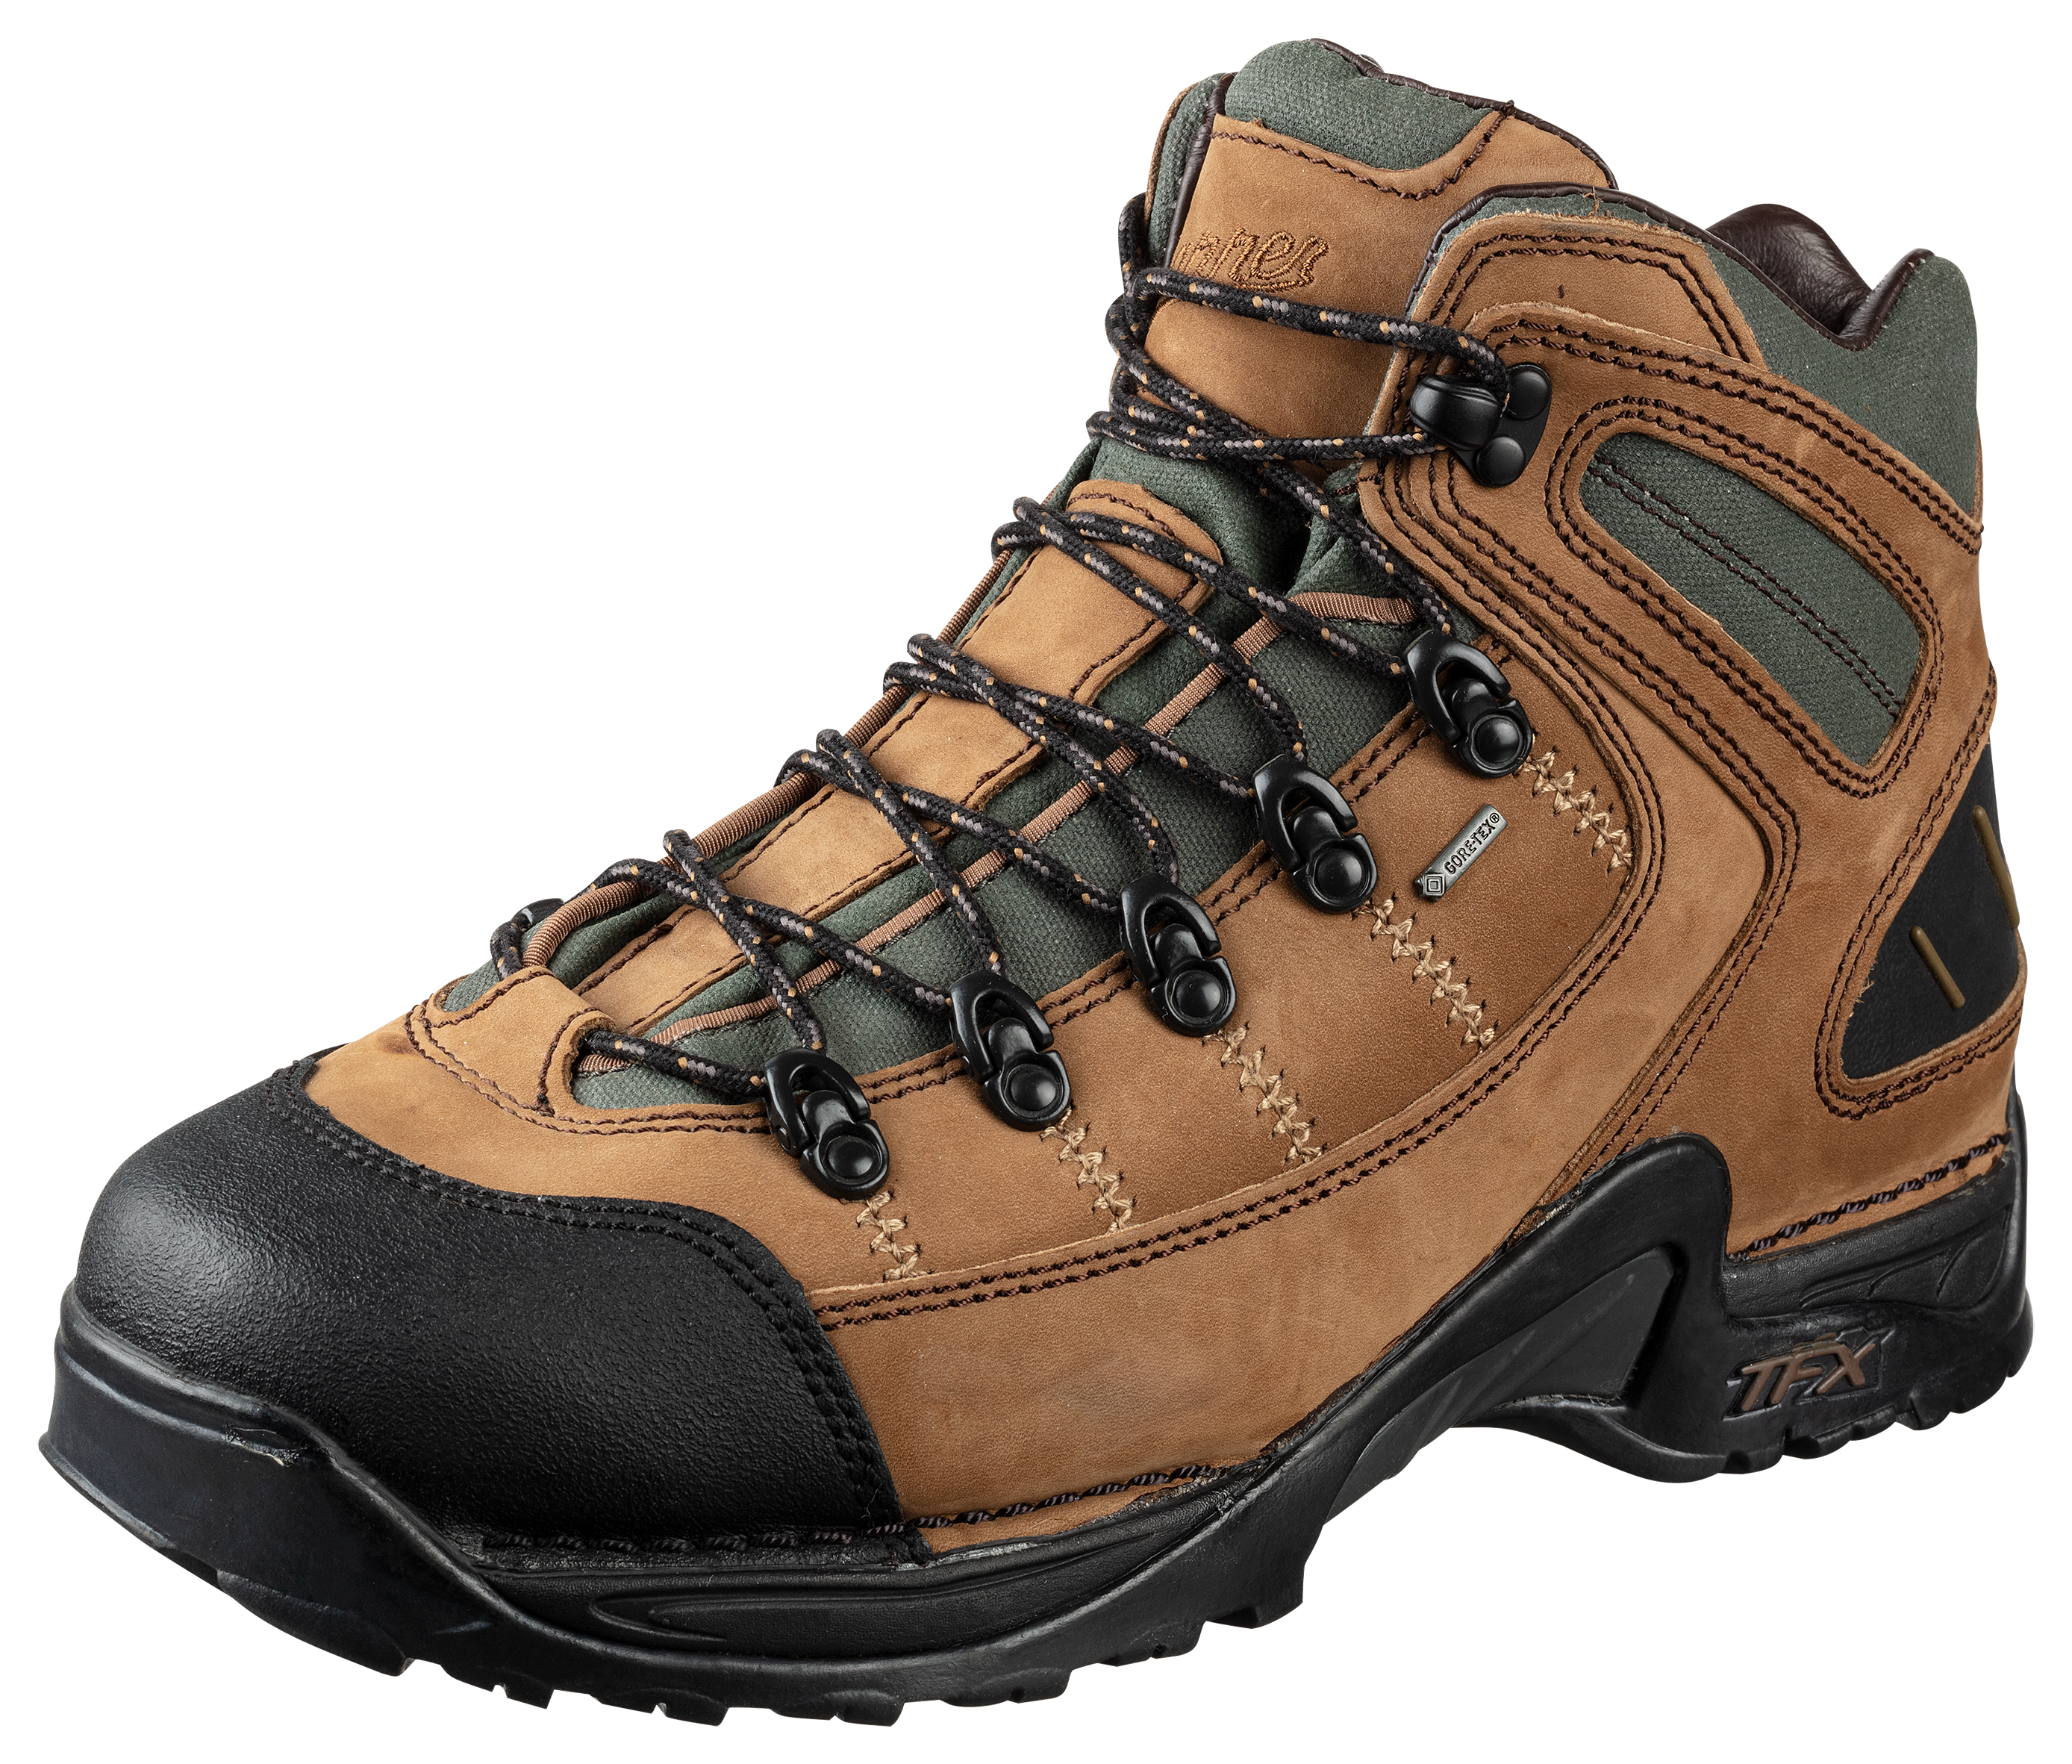 Danner 453 GORE-TEX Waterproof Hiking Boots for Men - Dark Tan - 13W